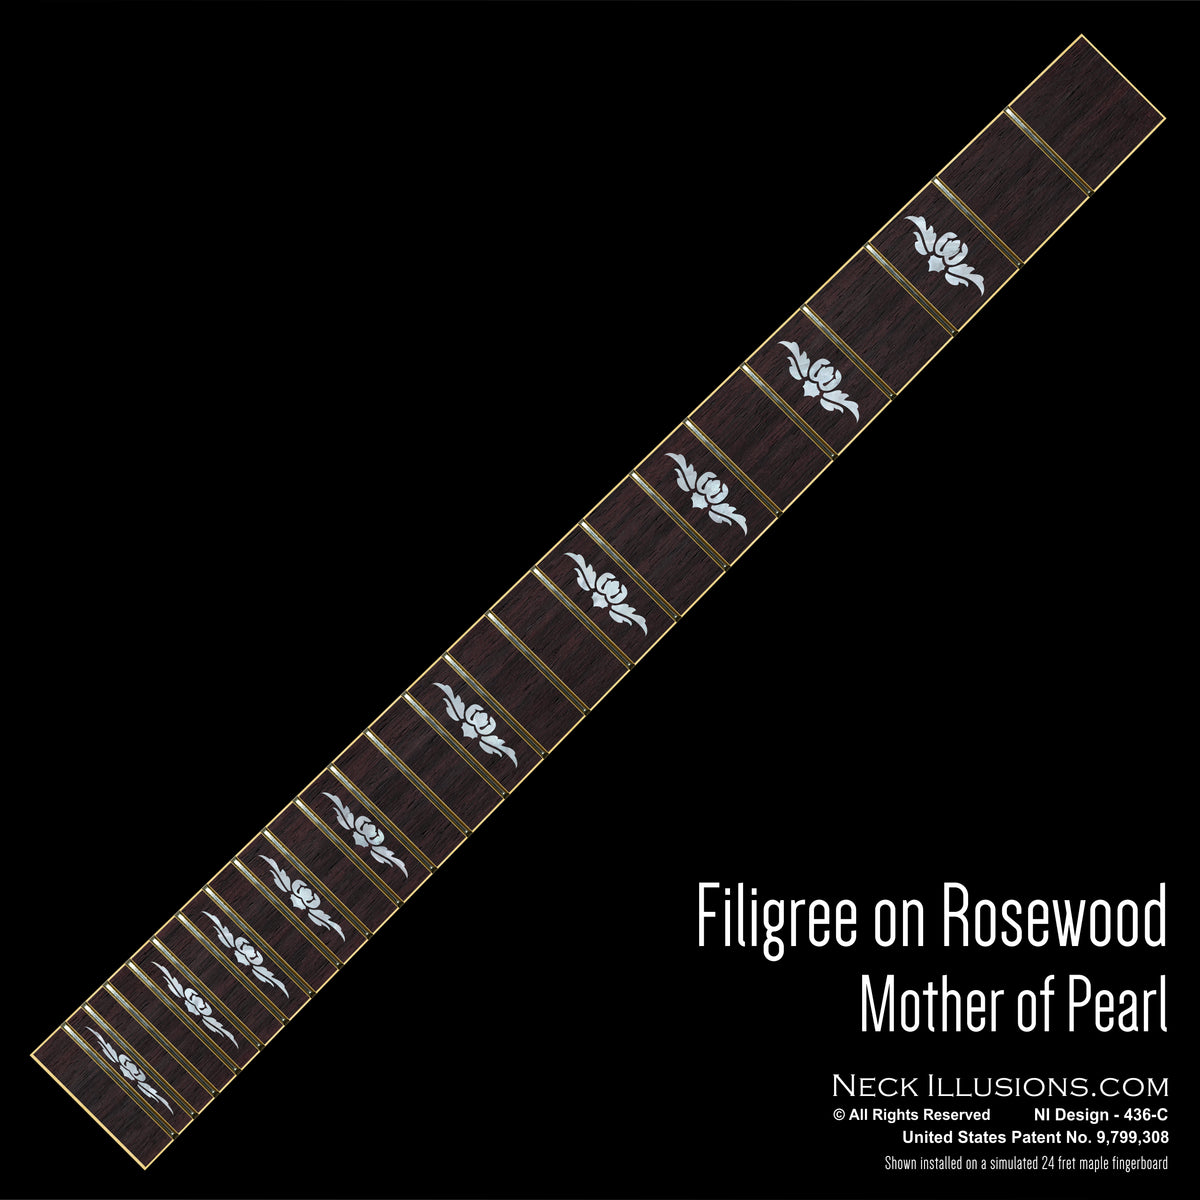 Filigree on Rosewood